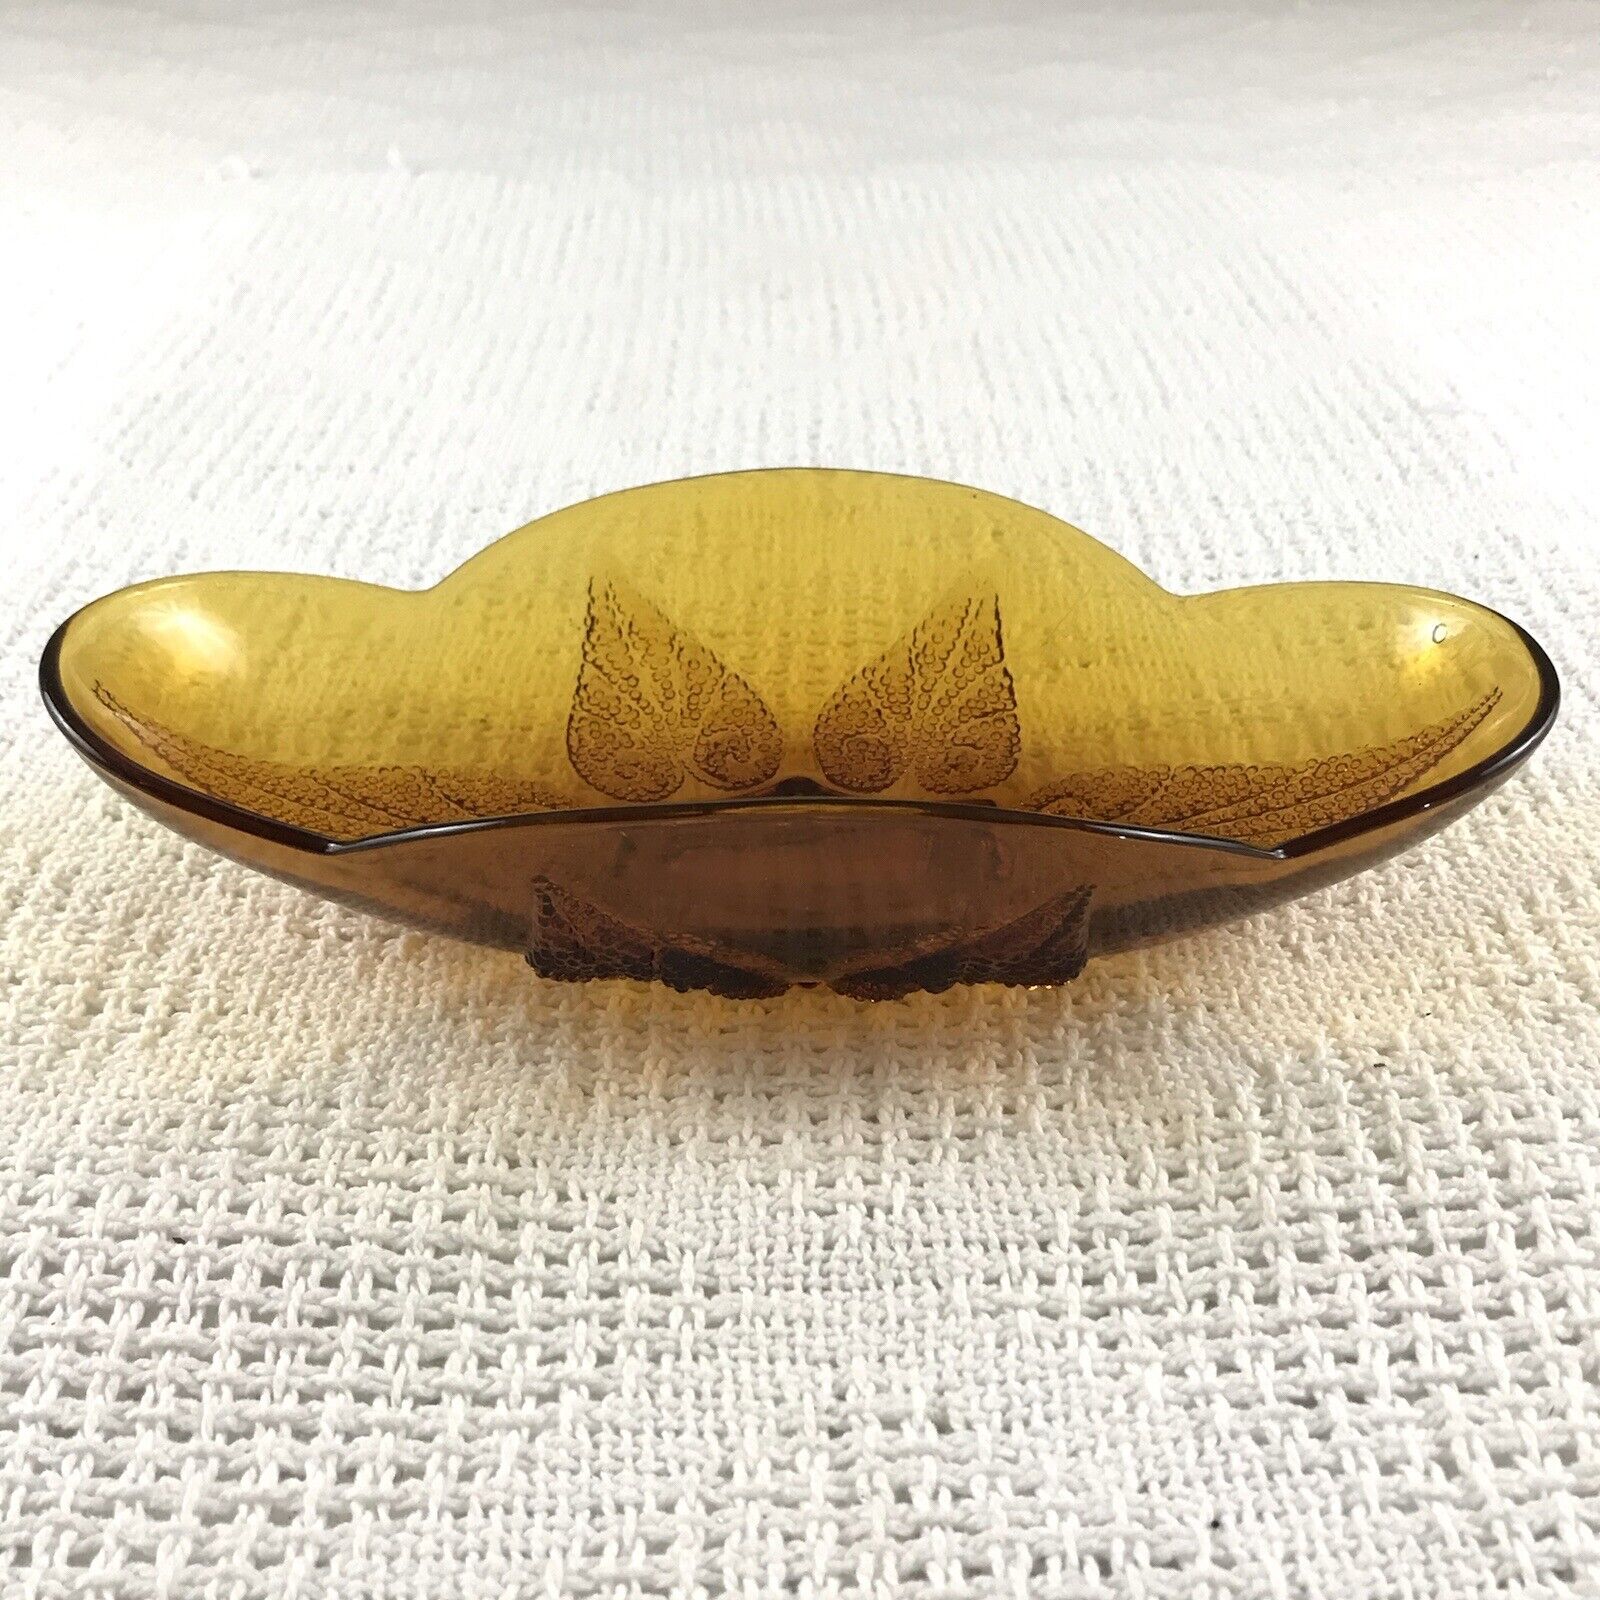 Amber Glass Dish Vintage Dark Orange Decorative Centerpiece Candy Bowl 10in 